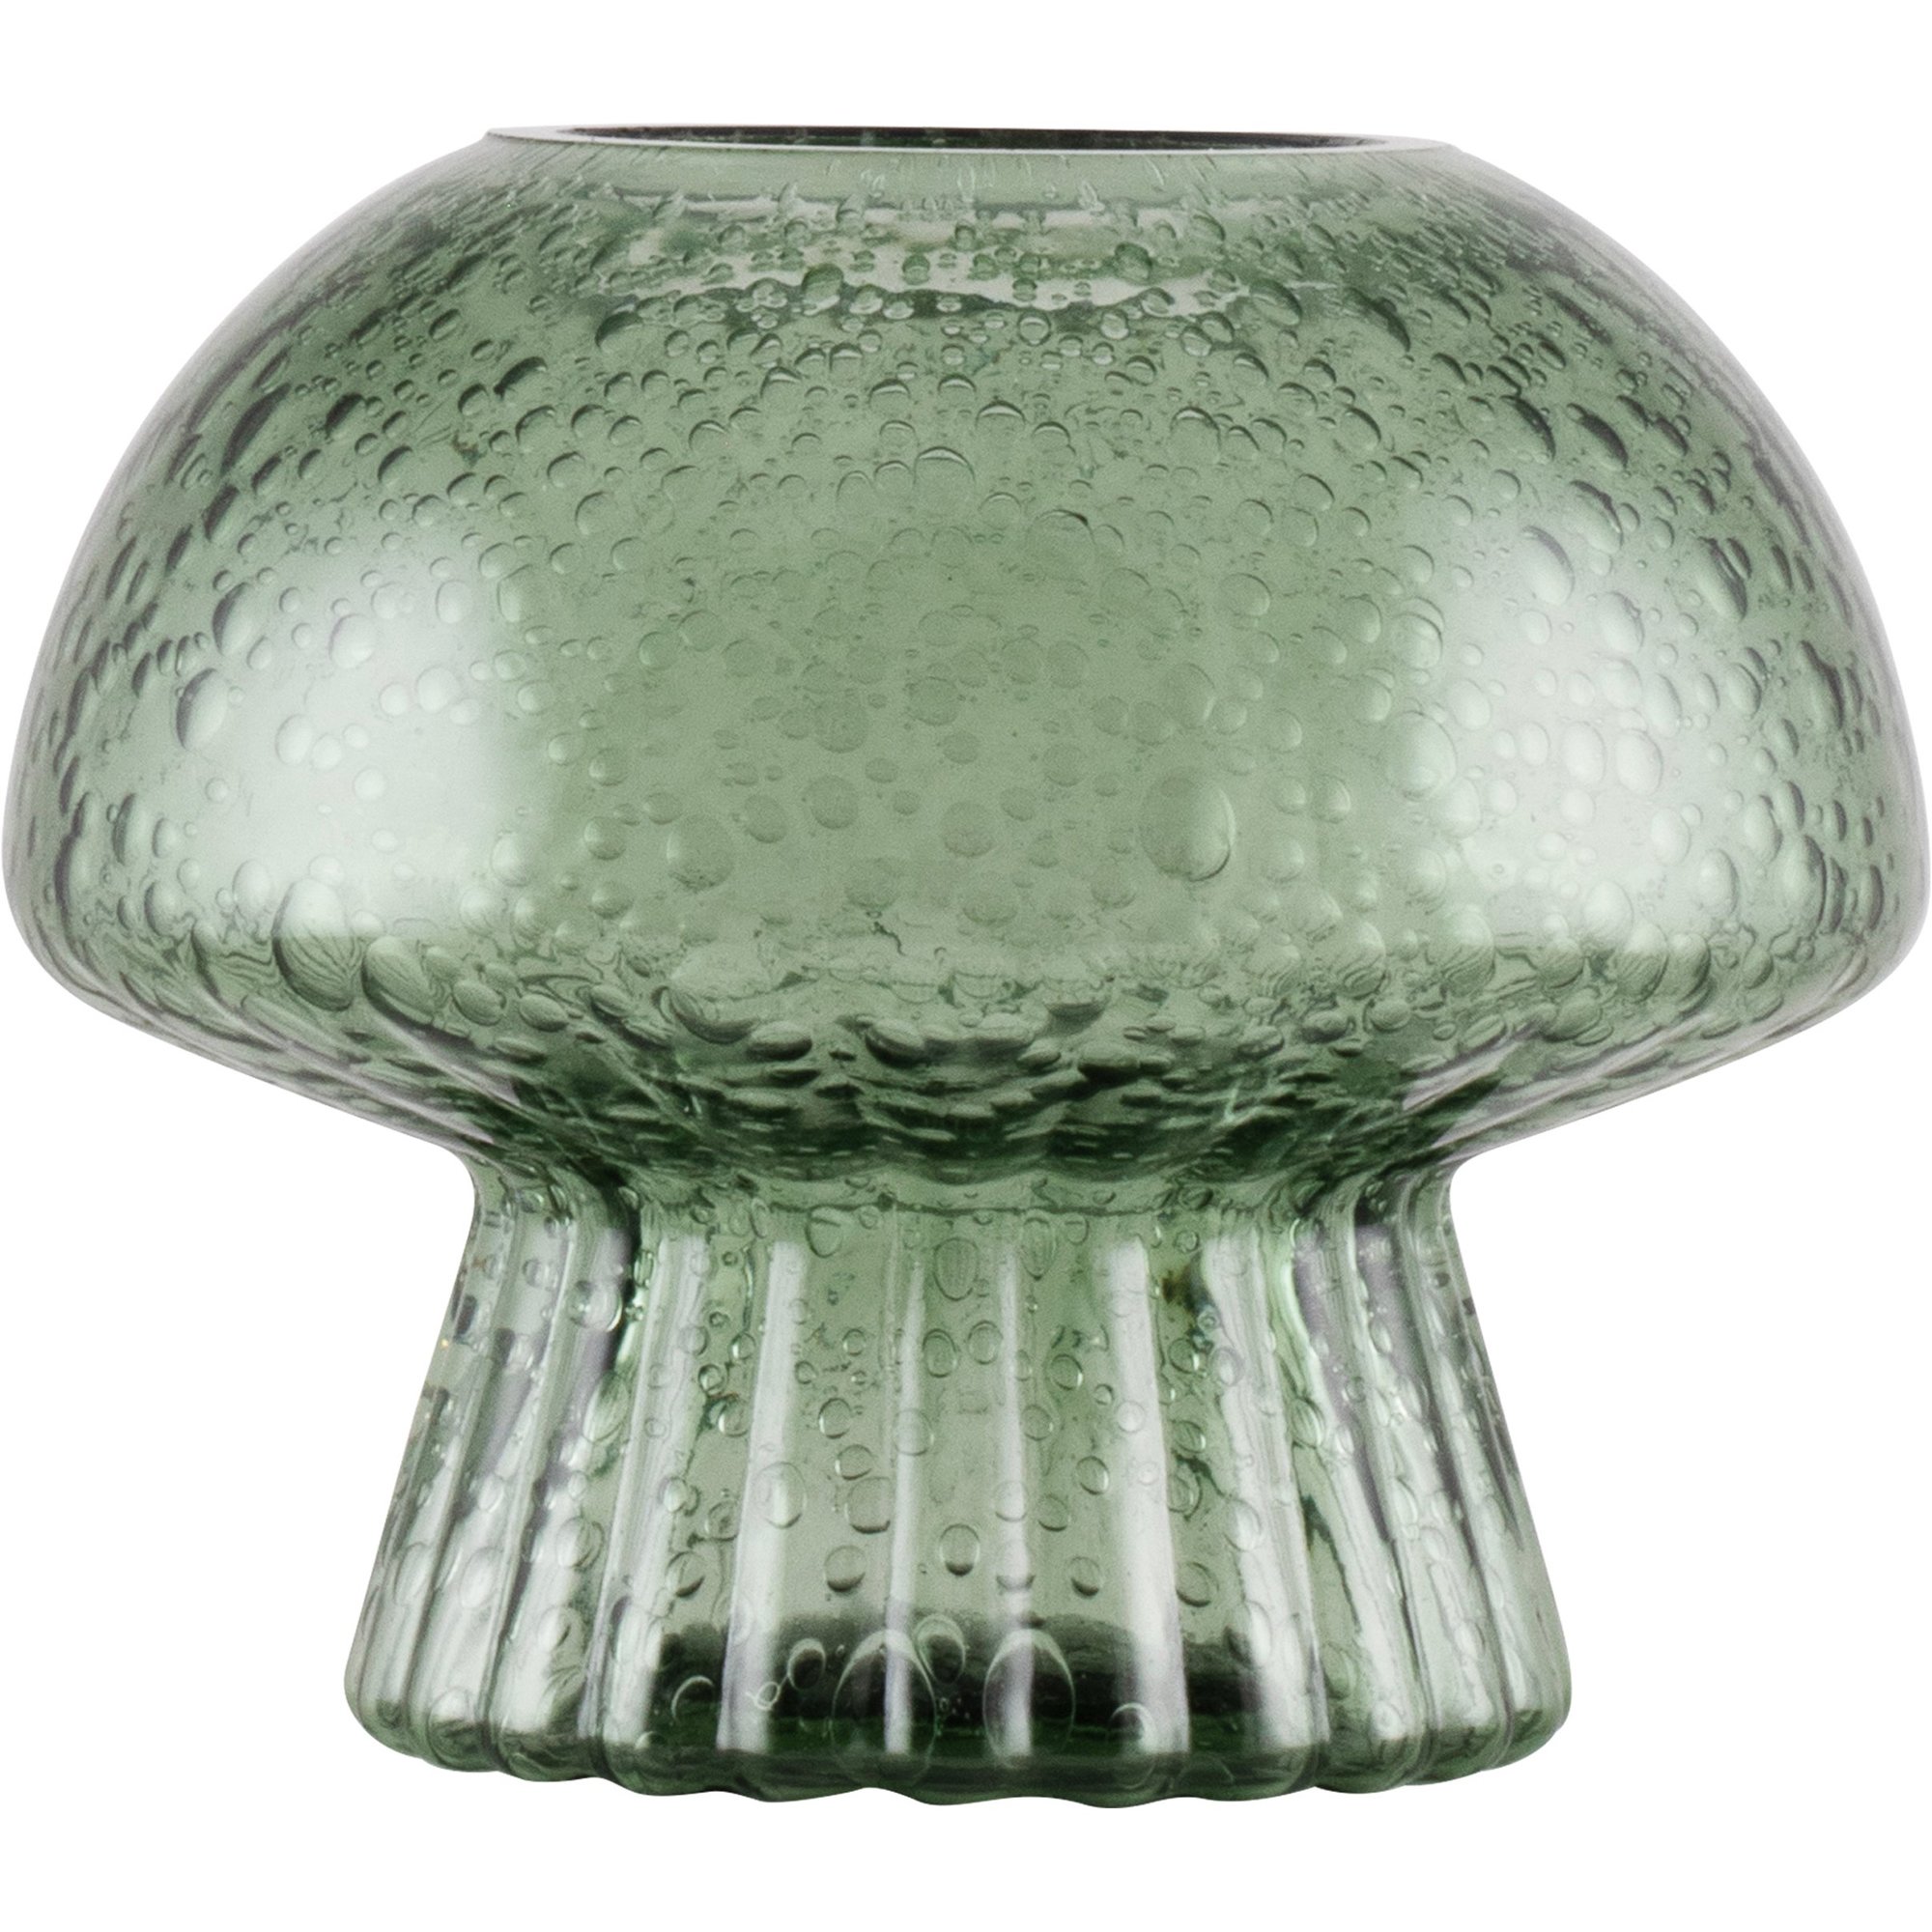 Globen Lighting Fungo Special Edition värmeljushållare 12 cm, grön